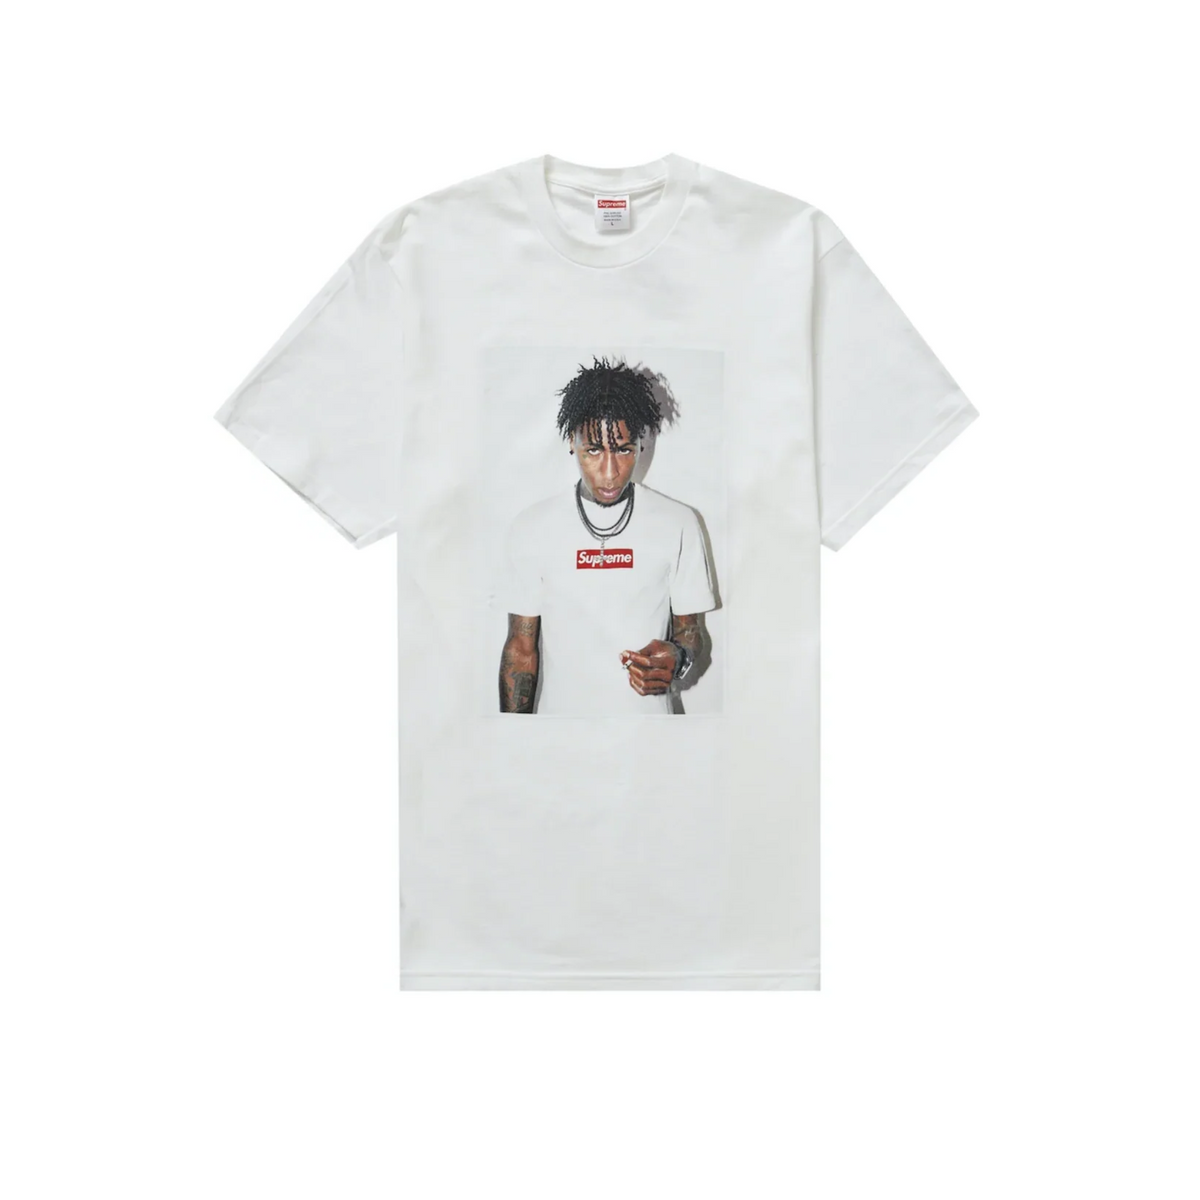 Supreme NBA Youngboy T-shirt "White"